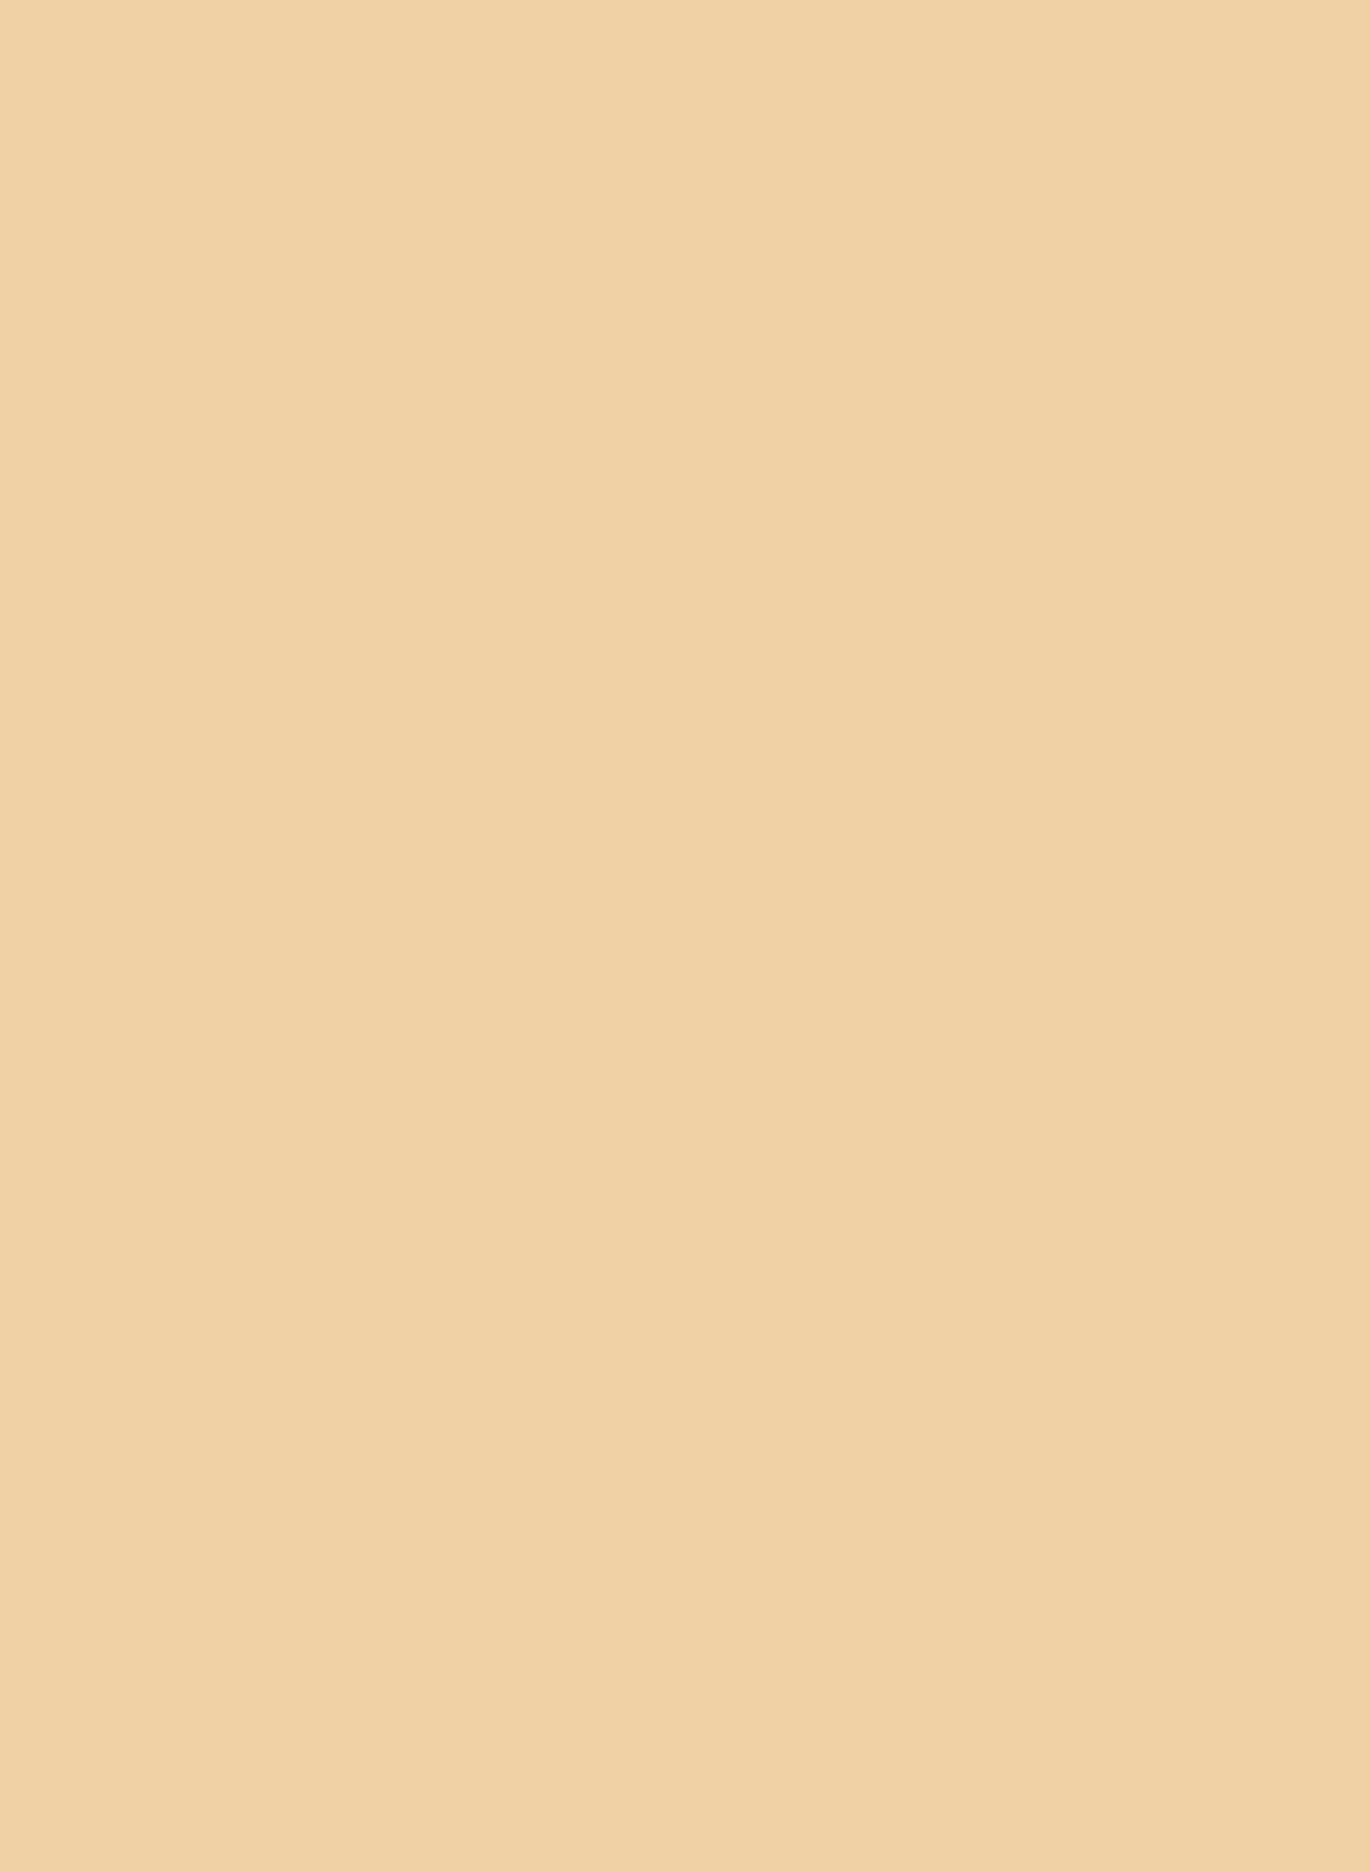 Головка гарпунного древка. Чукотка. I тыс. н. э. Фотография: Государственный музей Востока